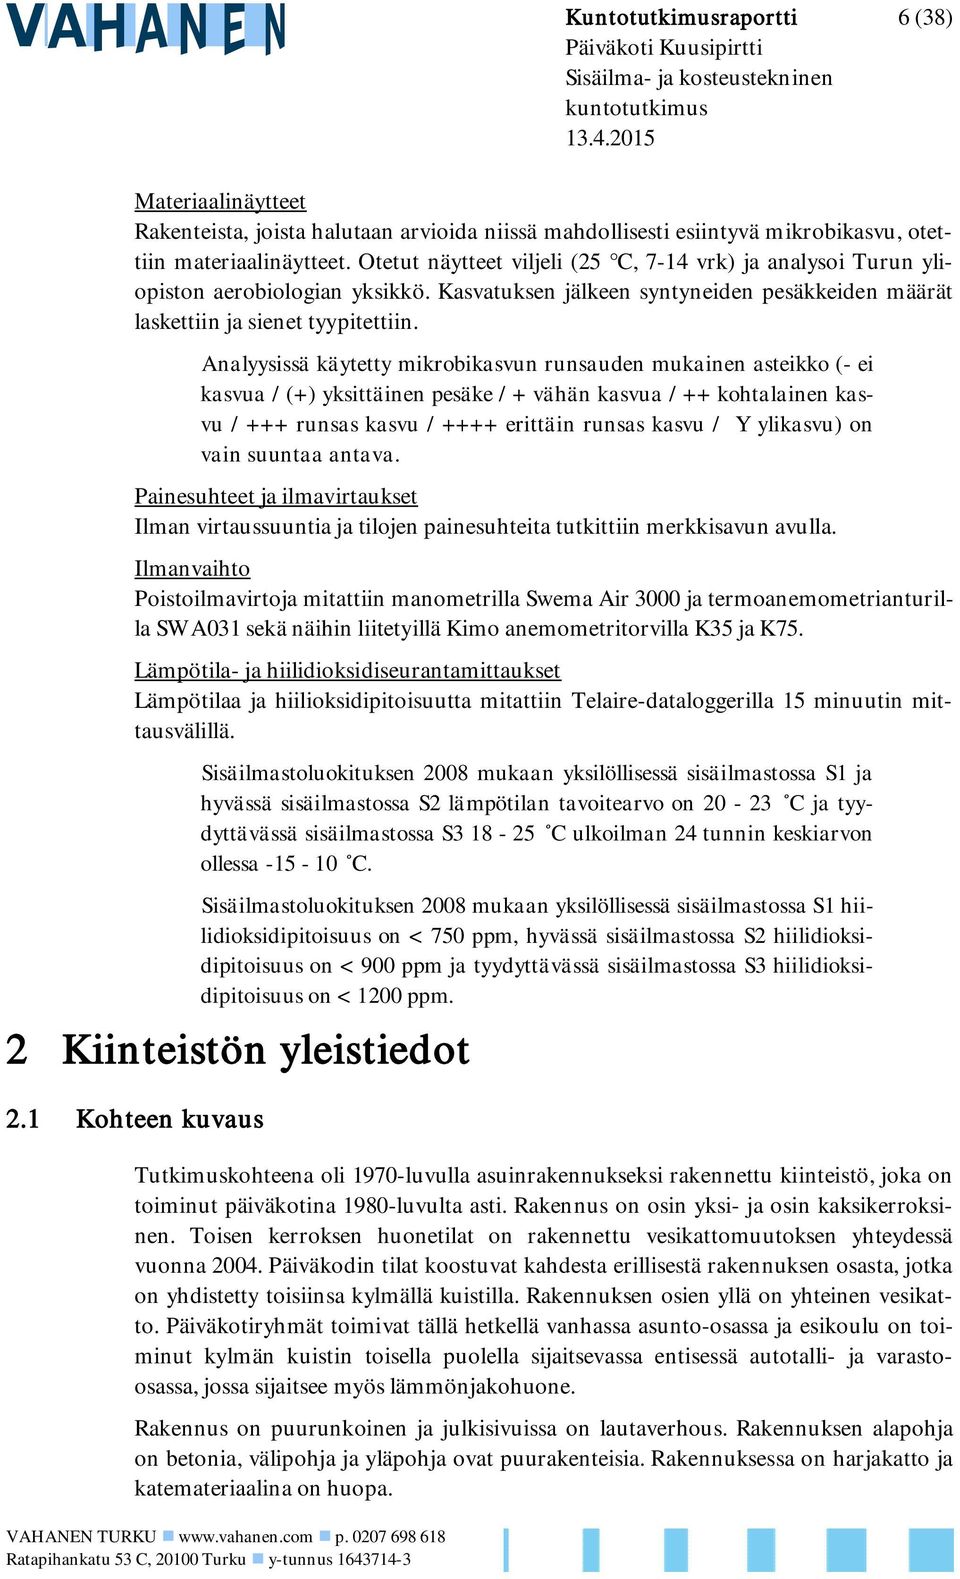 Otetut näytteet viljeli (25 C, 7-14 vrk) ja analysoi Turun yliopiston aerobiologian yksikkö. Kasvatuksen jälkeen syntyneiden pesäkkeiden määrät laskettiin ja sienet tyypitettiin.